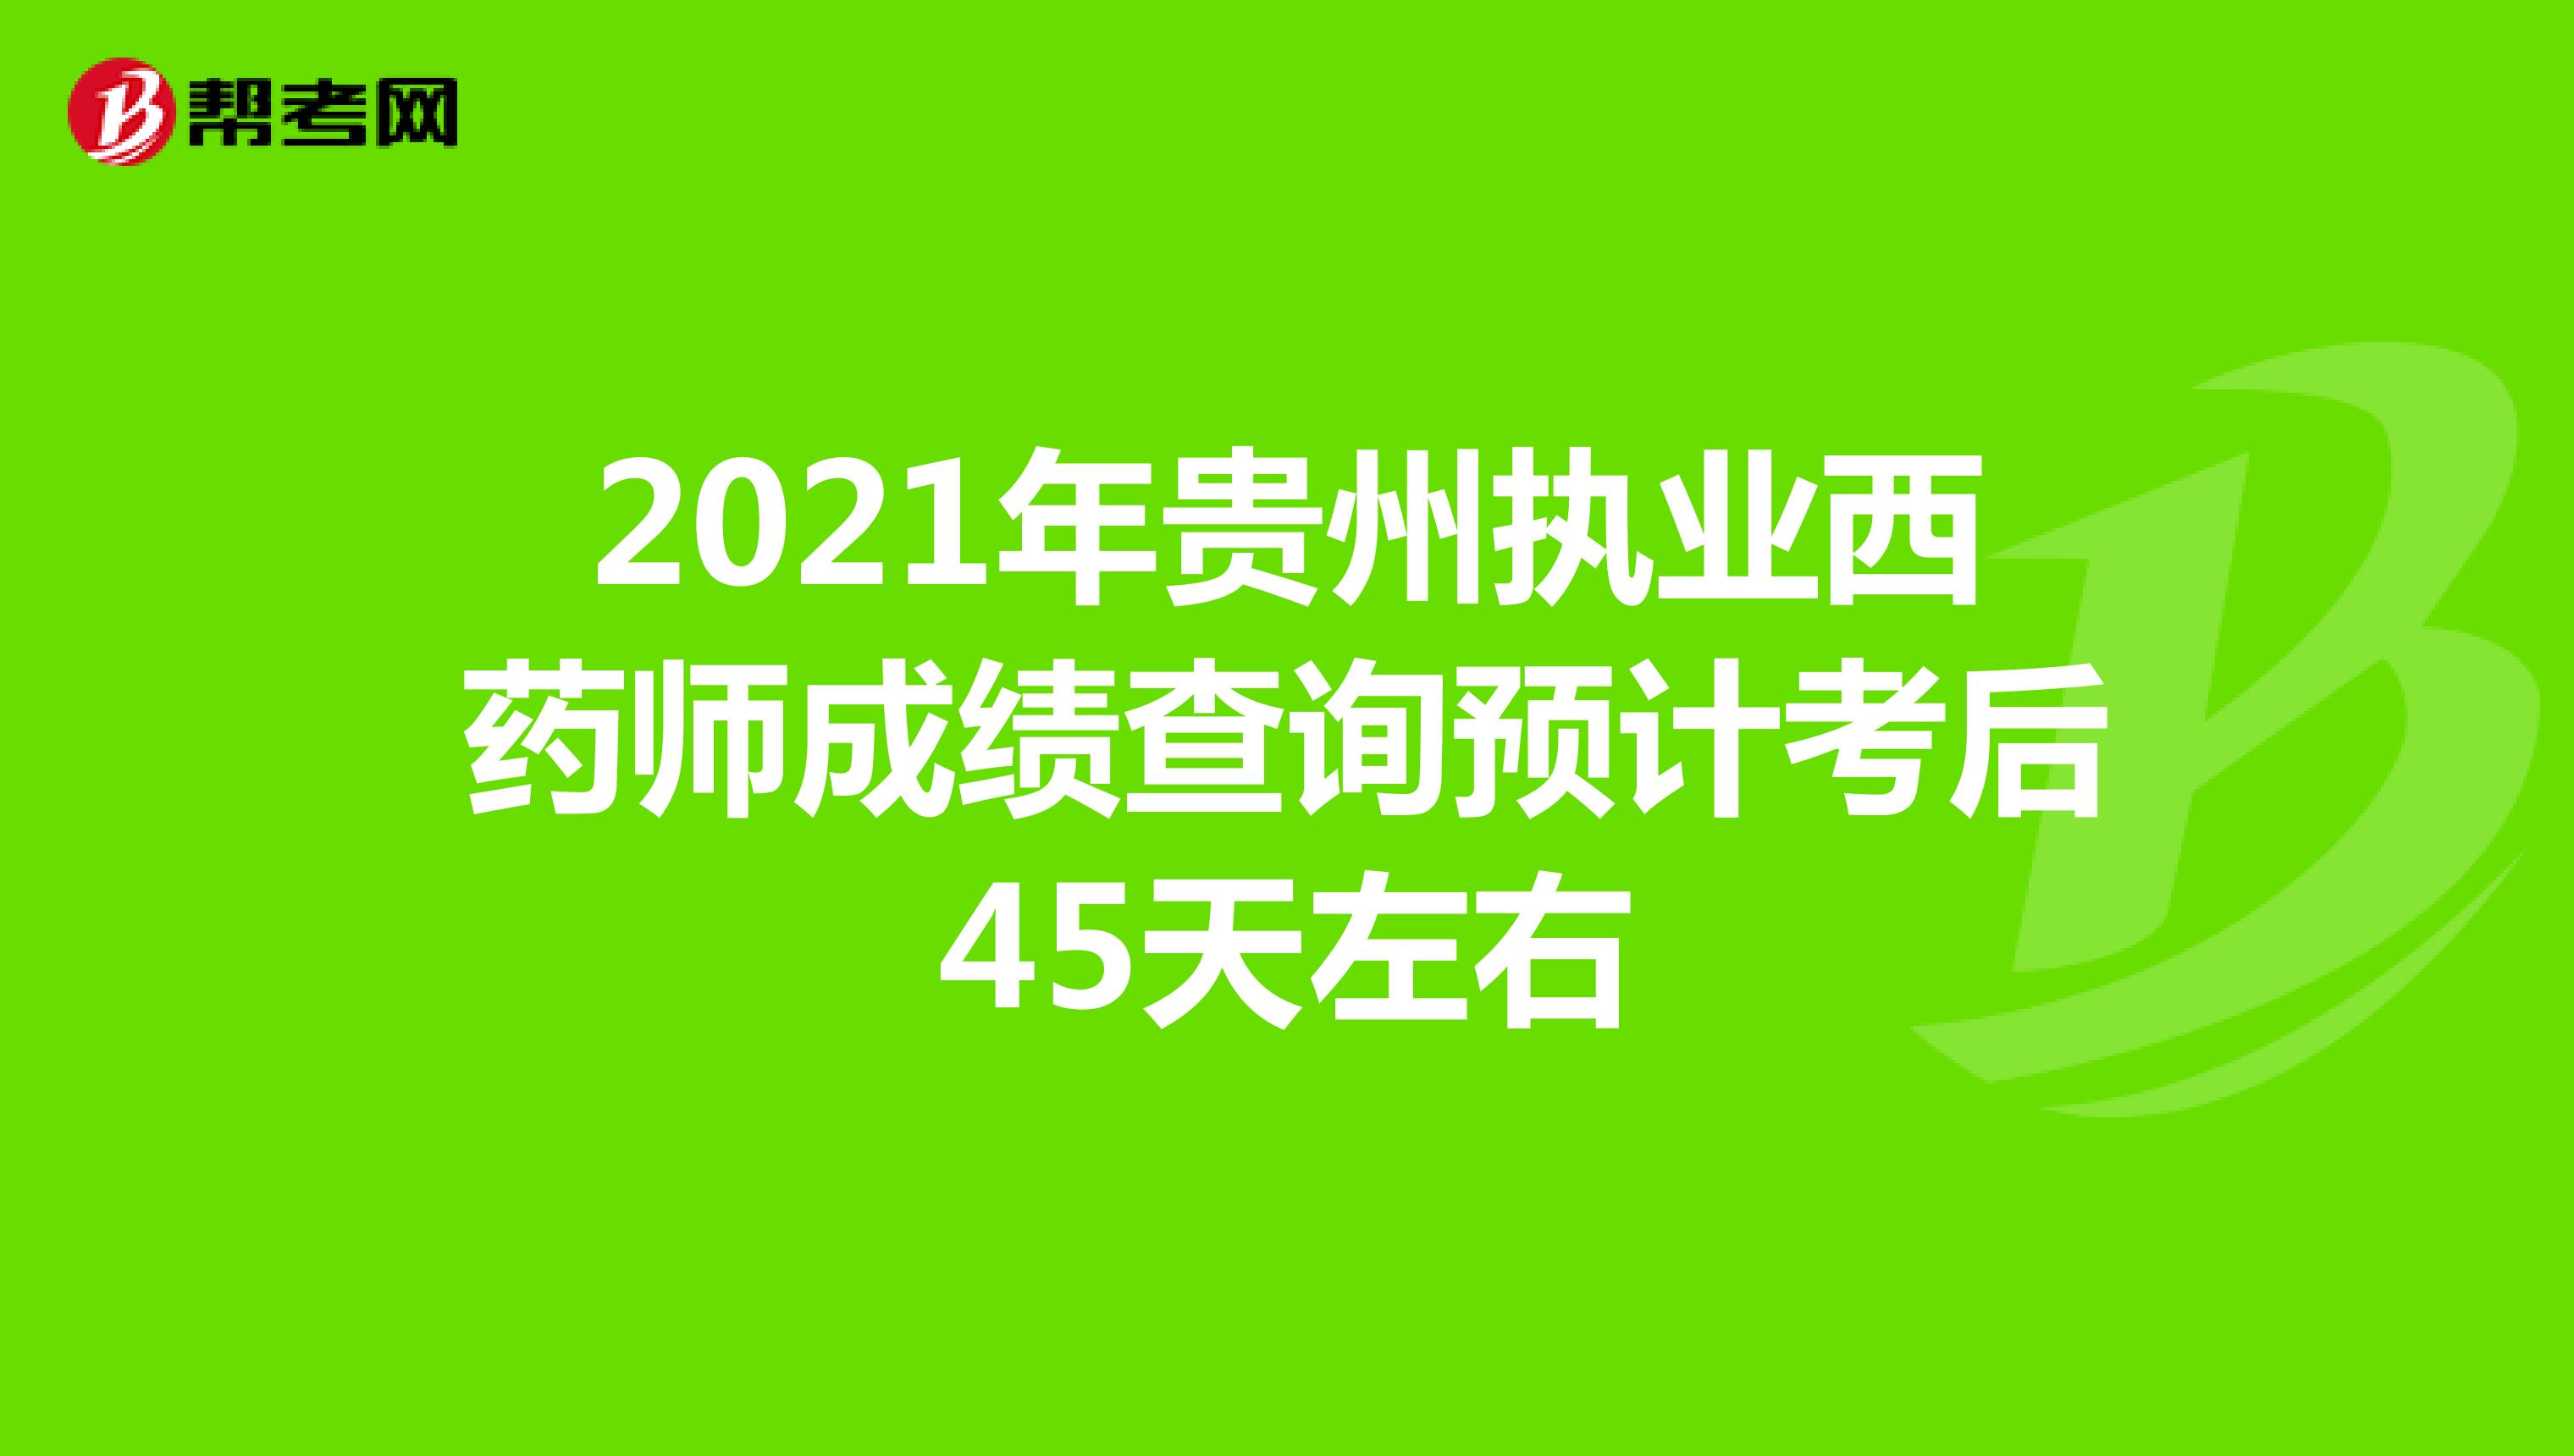 2021年贵州执业西药师成绩查询预计考后45天左右